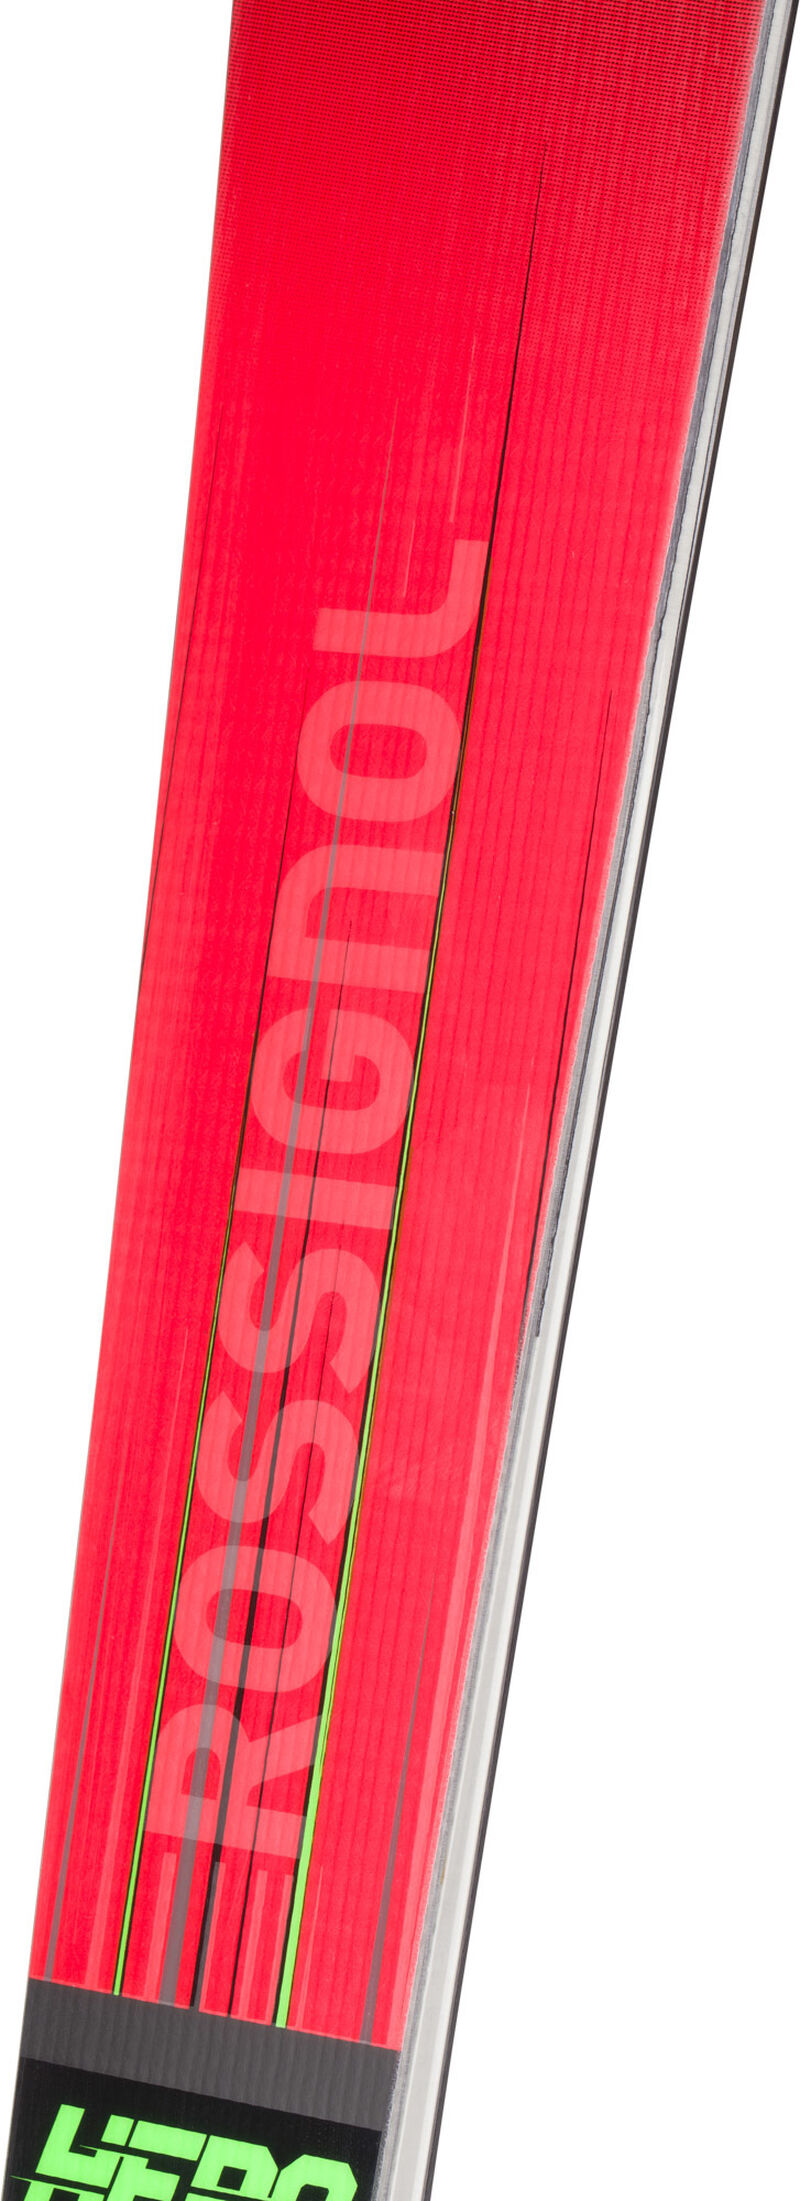 Rossignol Skis racing unisexe HERO ATHLETE SL 150 R22 red